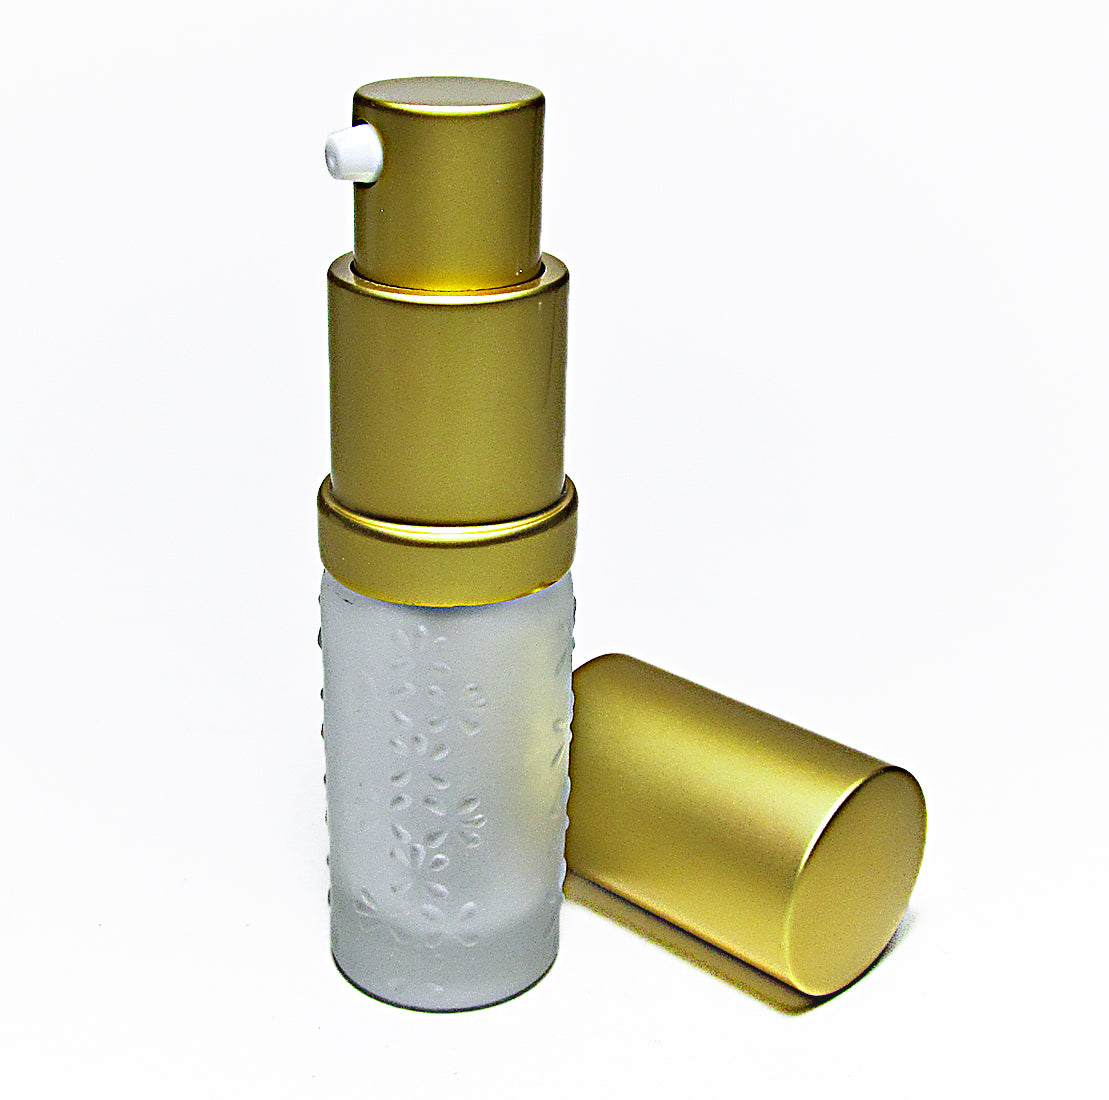 perfume oil spray bottle